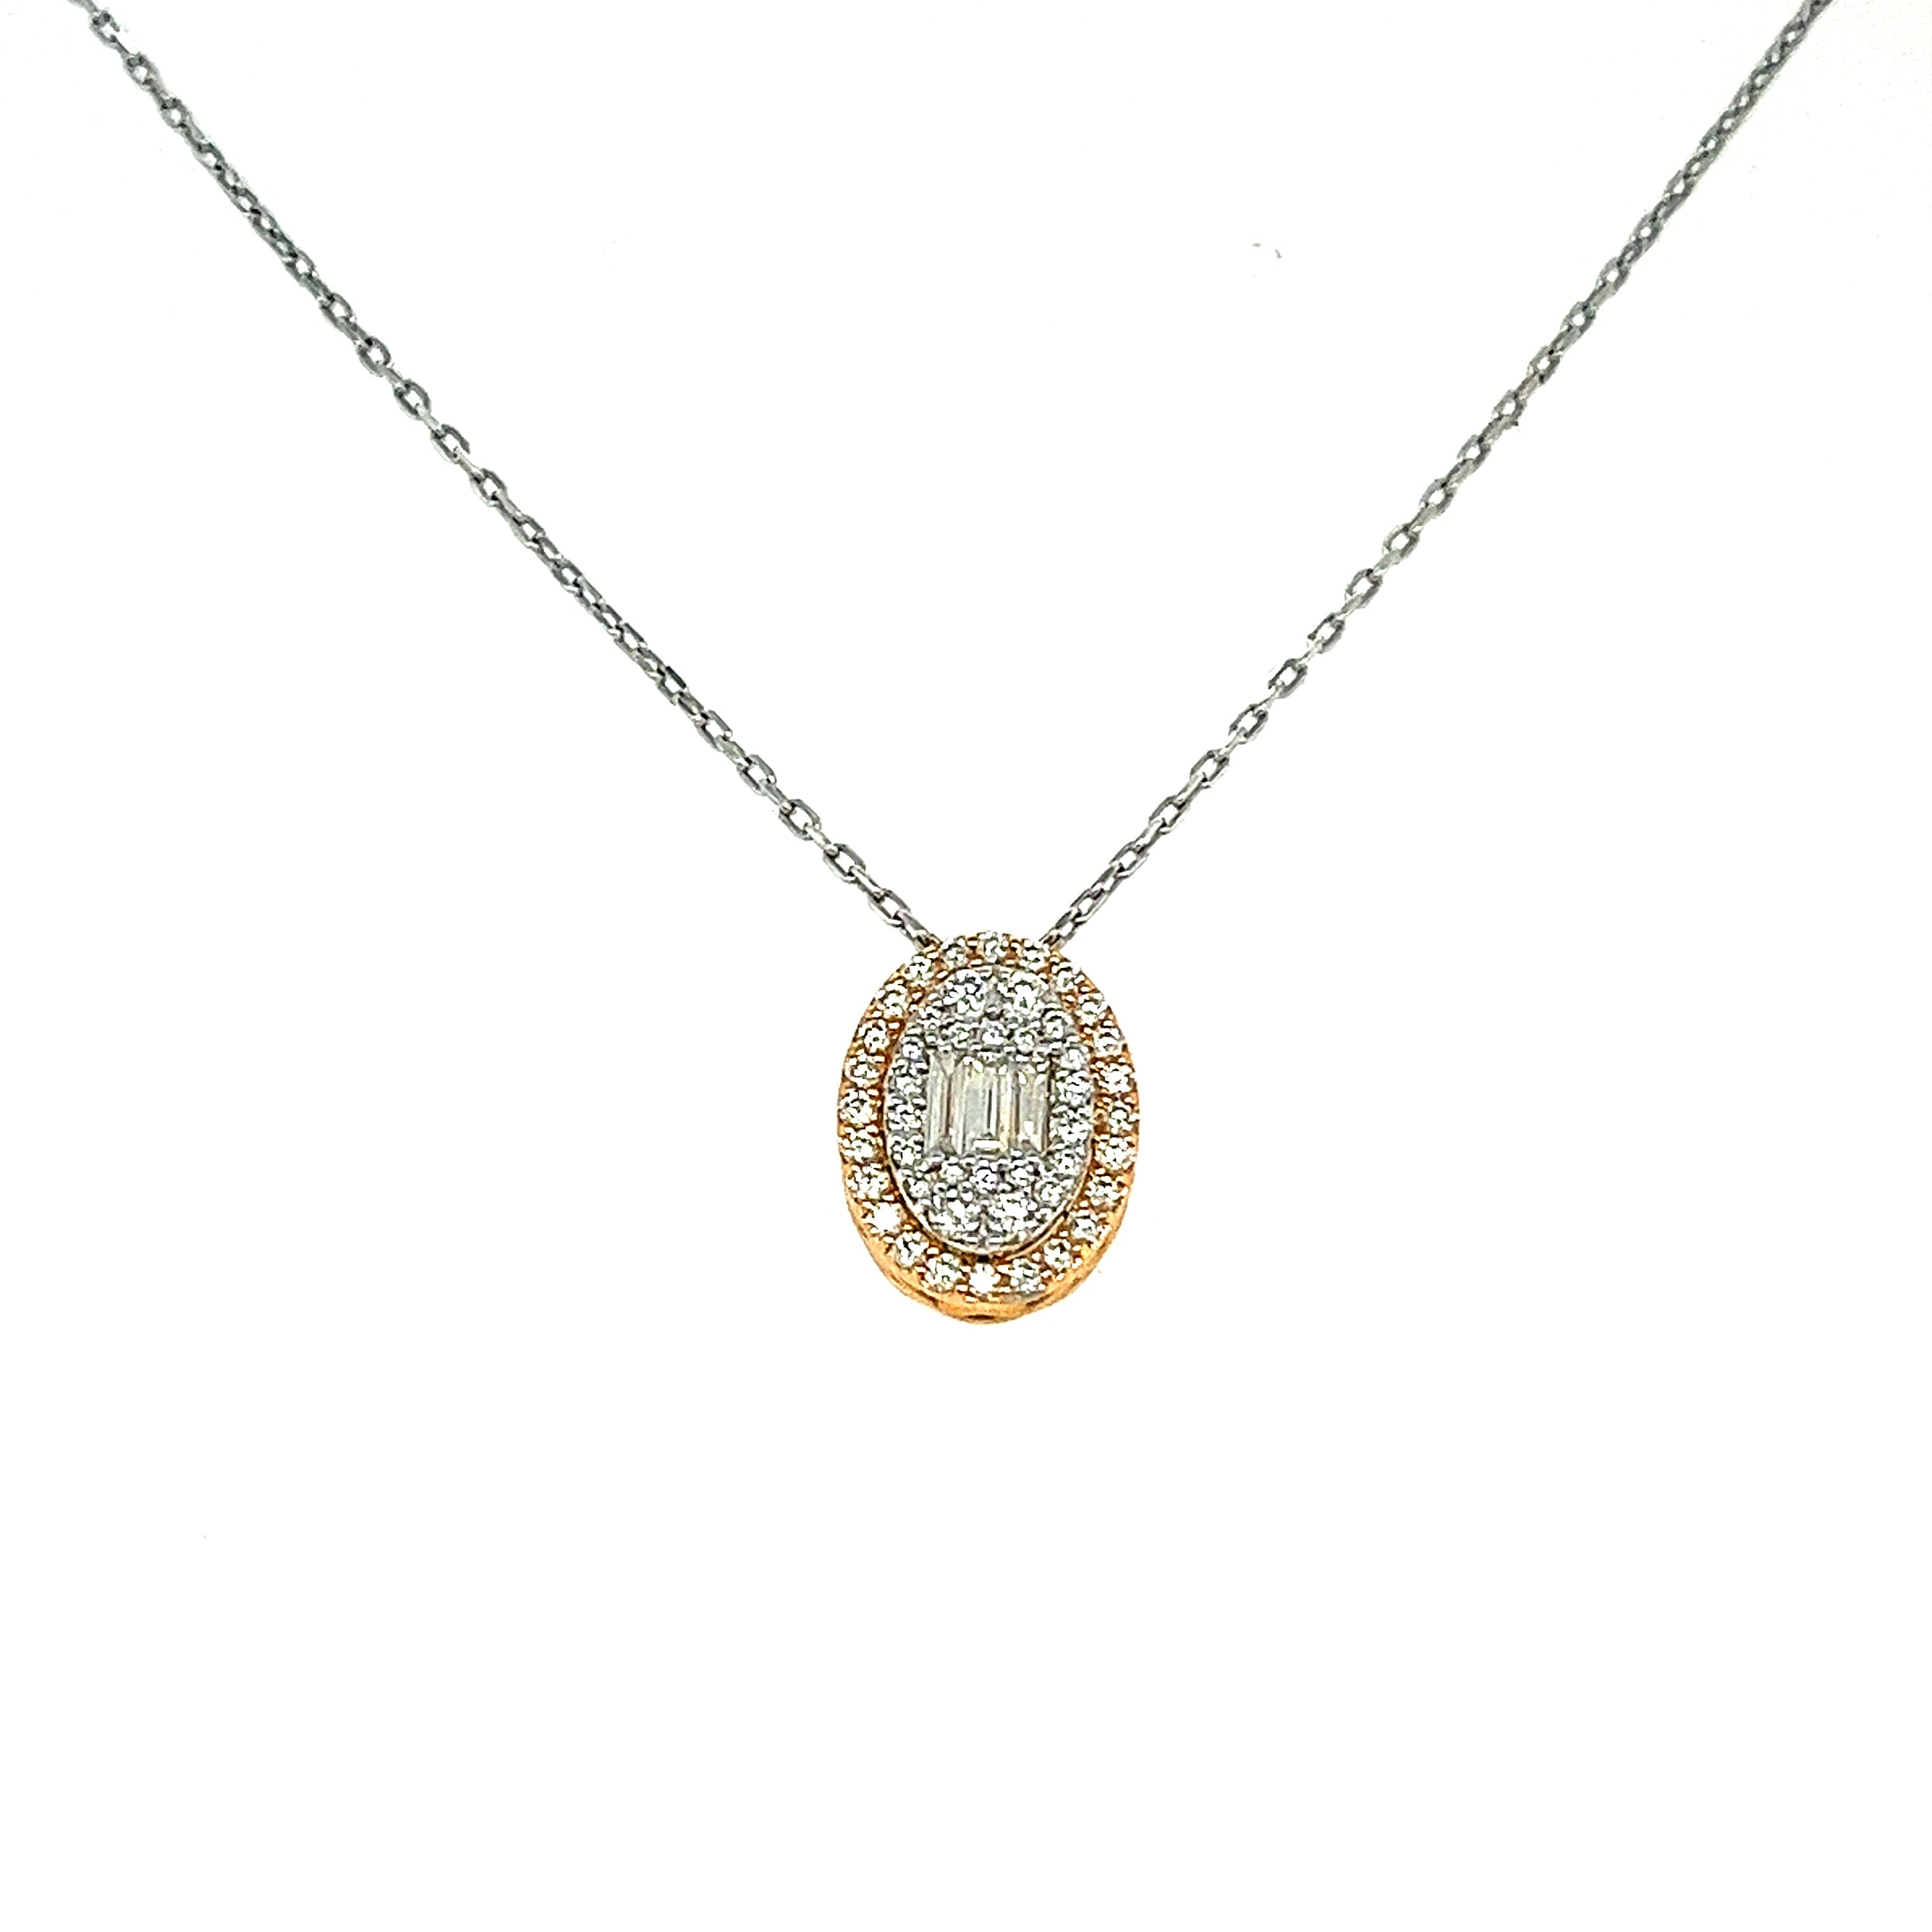 Baguette Central Diamond Necklace / I-H26P